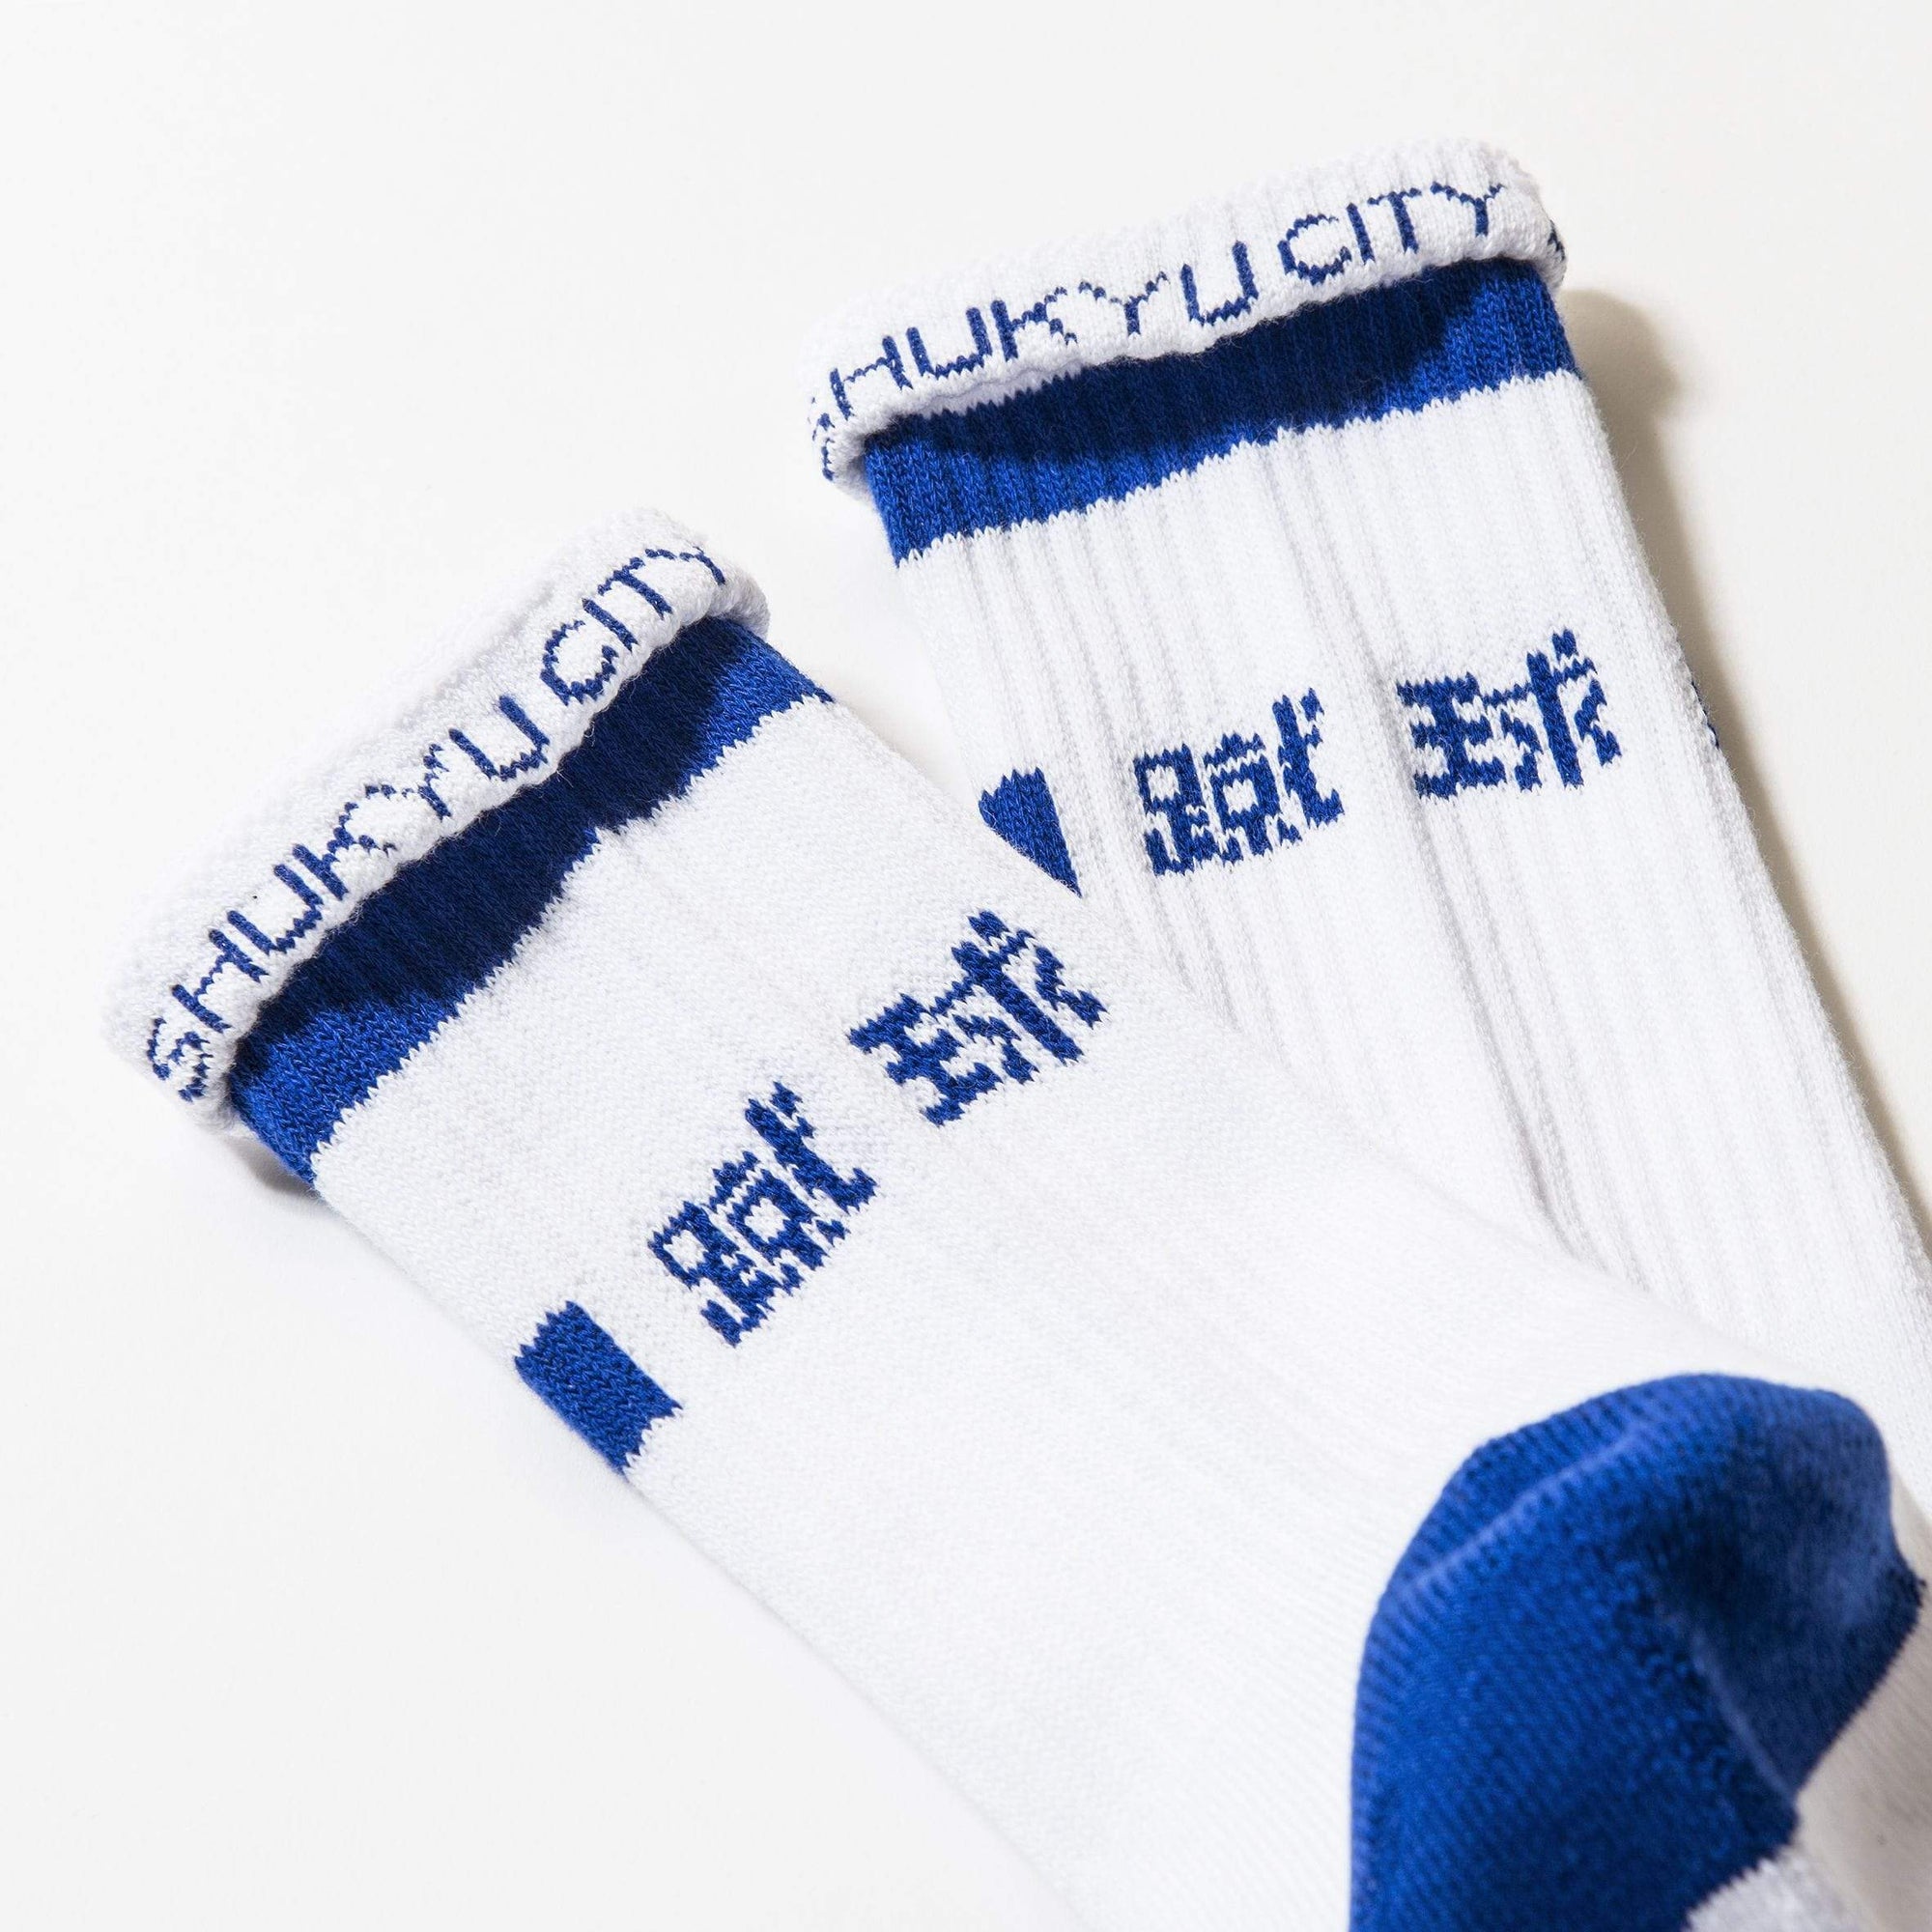 SHUKYU MAGAZINE × CITY BOYS FC “SHUKYU” SOCKS / WHT × BLUE